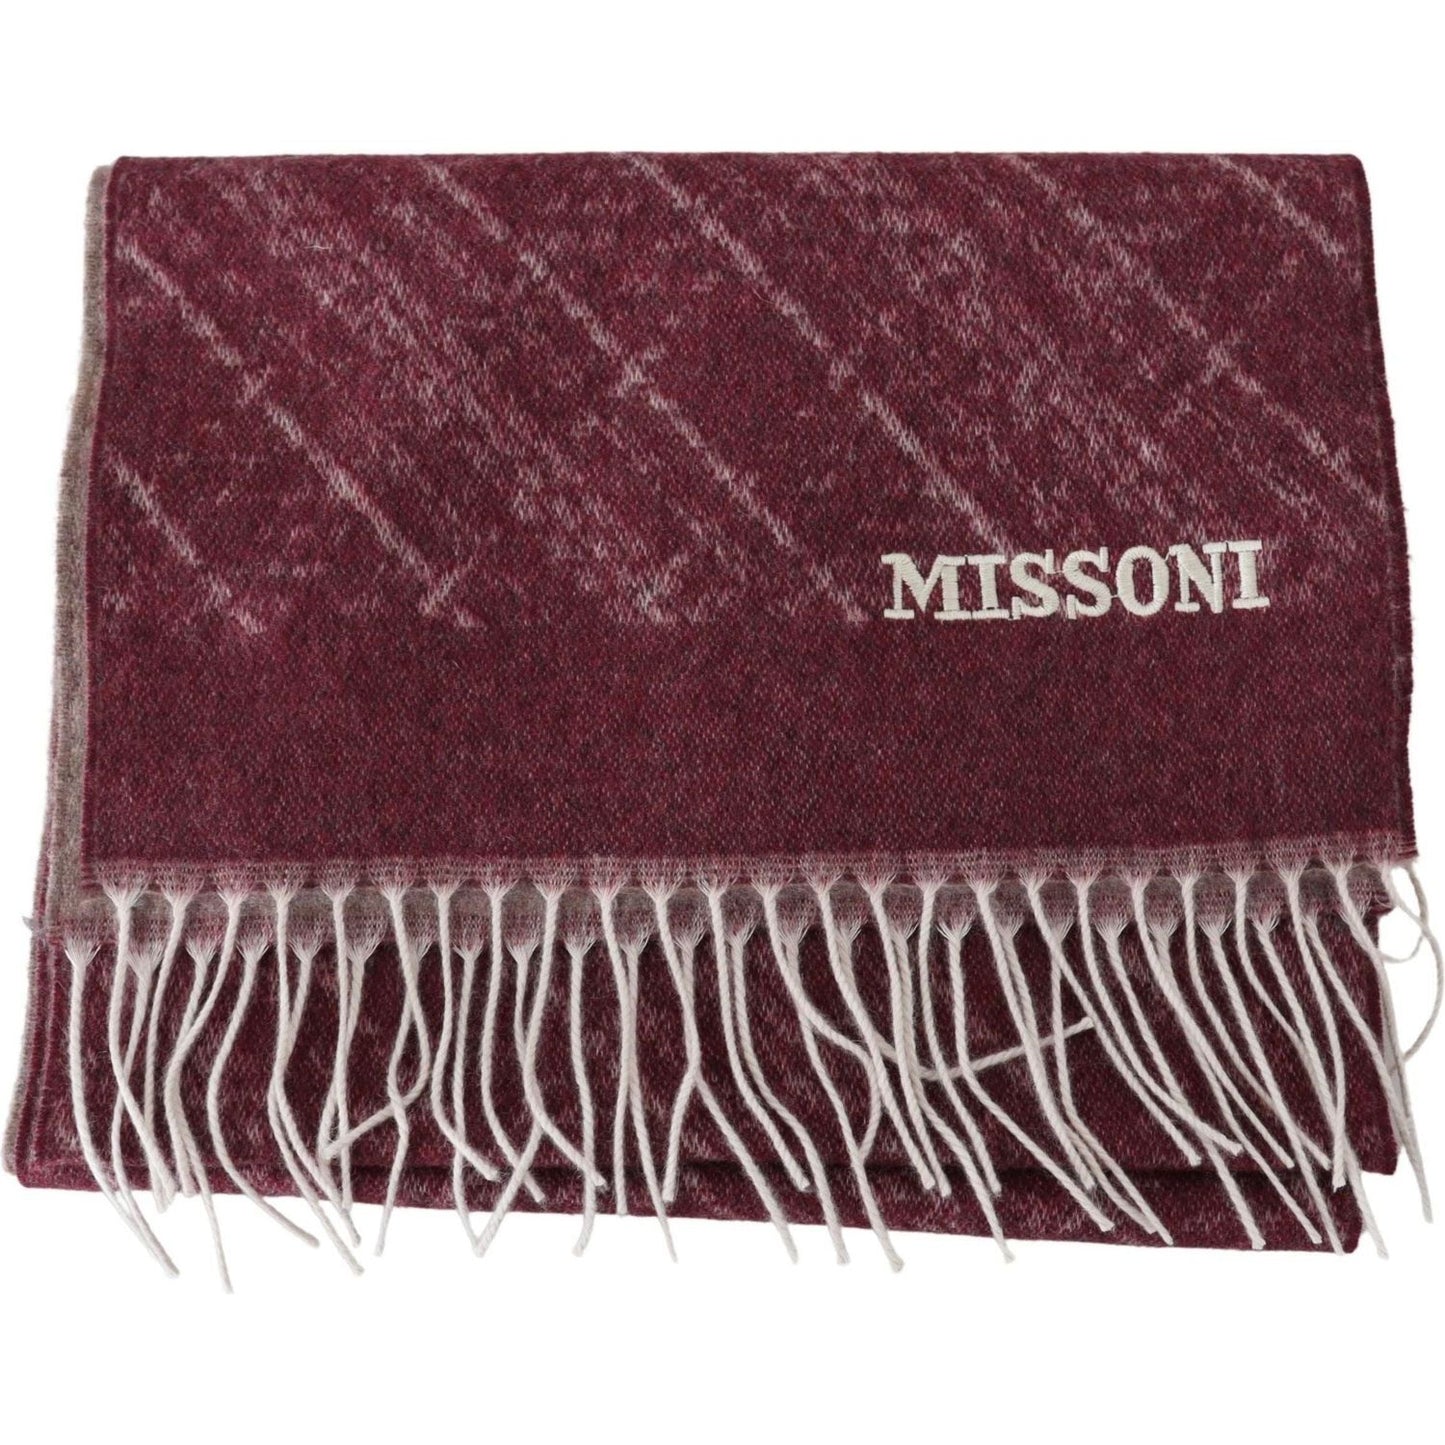 Missoni Elegant Cashmere Fringed Scarf maroon-100-cashmere-unisex-neck-wrap-fringes-scarf